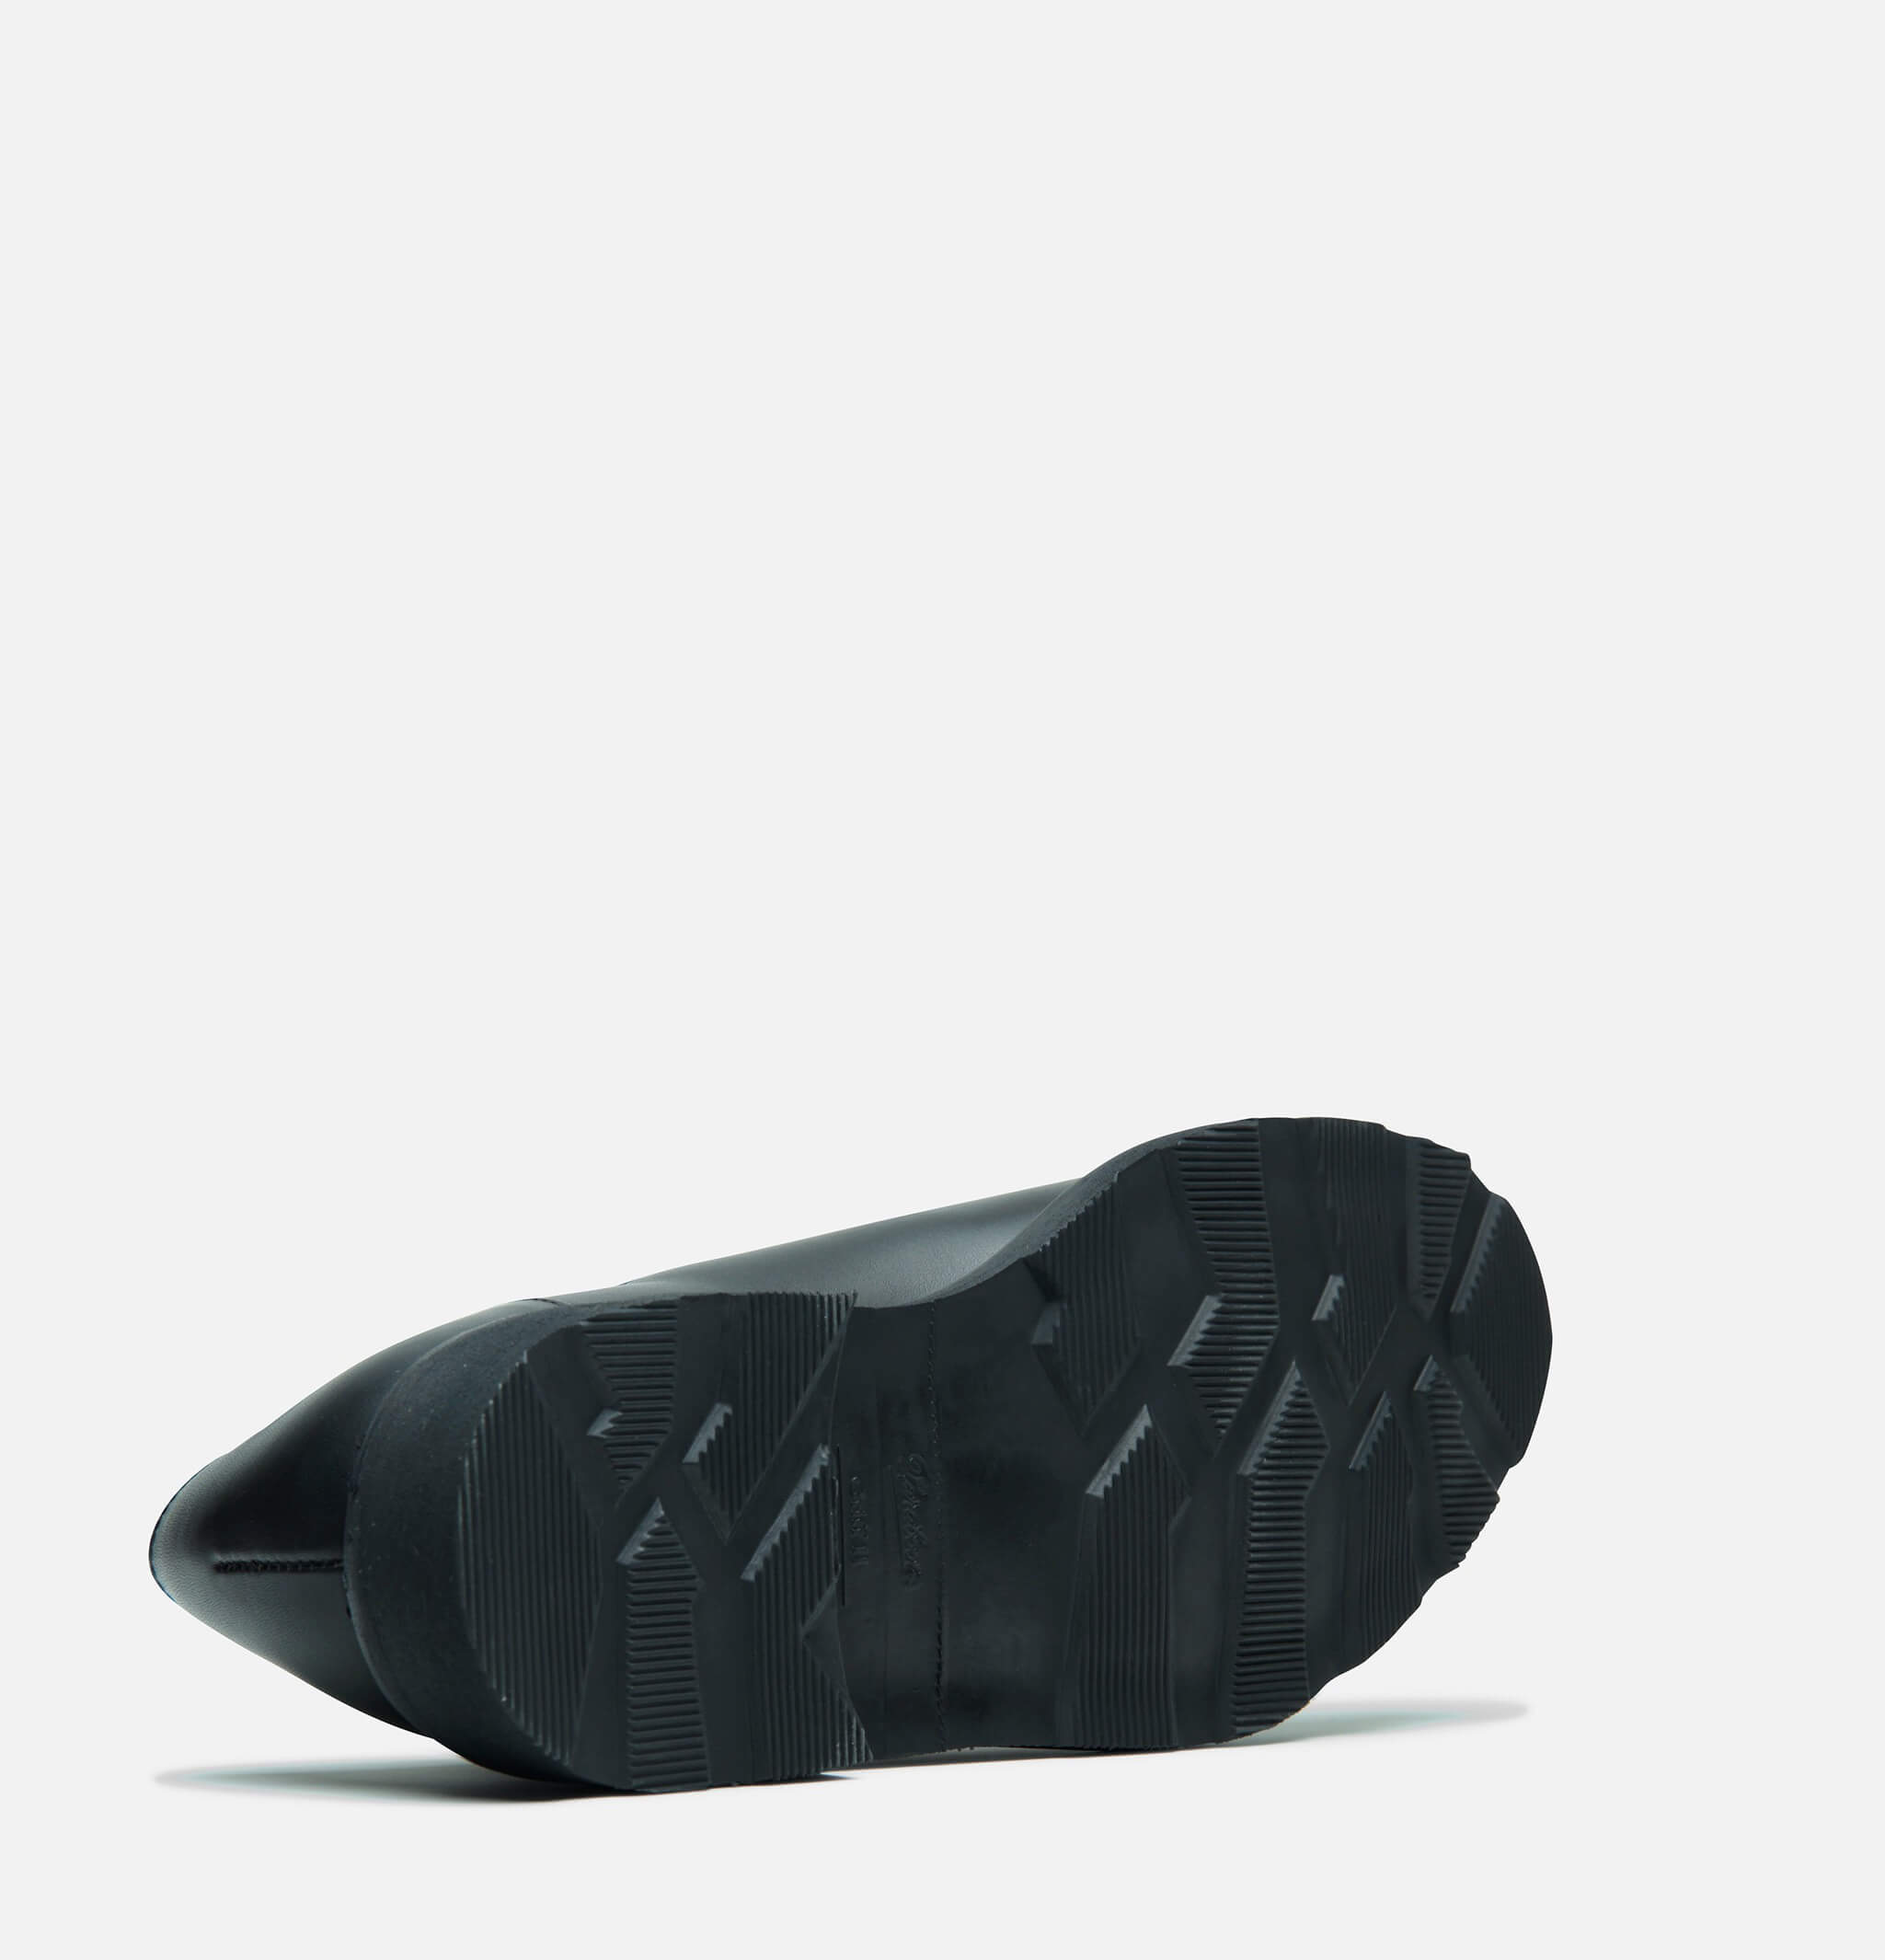 Paraboot Avignon Shoes Black